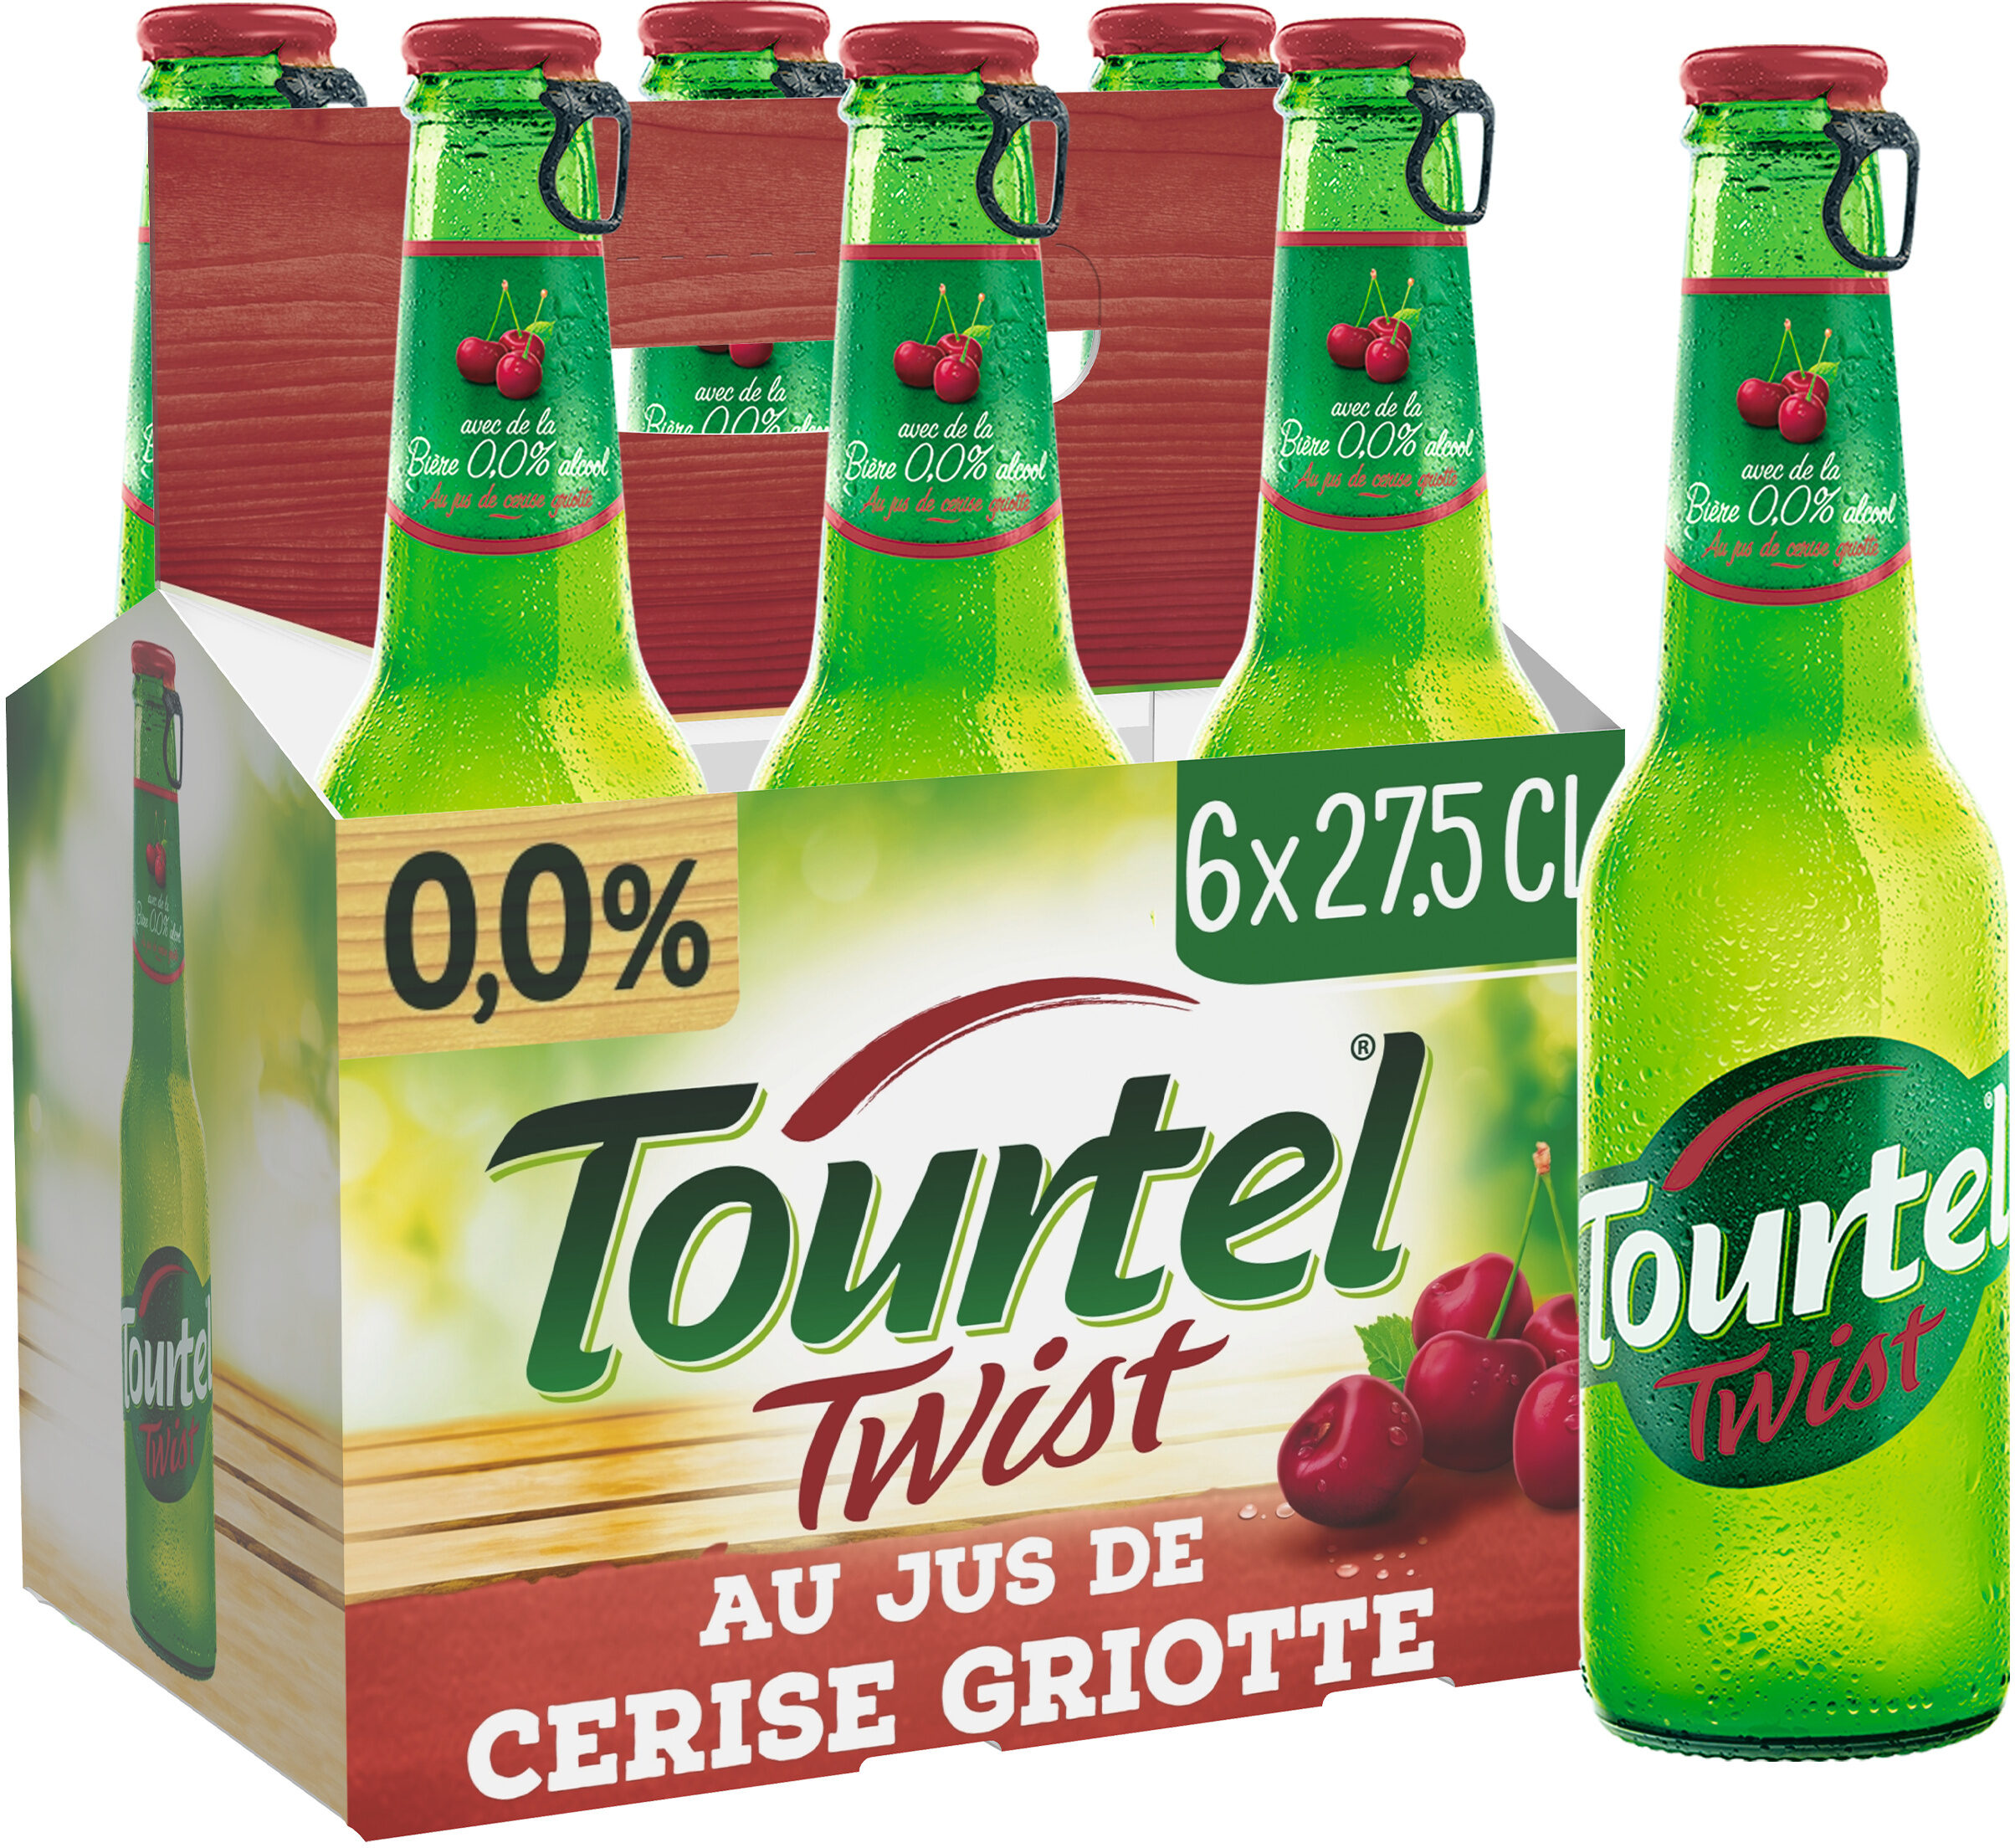 Tourtel 6X27,5CL TOURTEL TWIST CERISE 0.0 DEGRE ALCOOL - Produit